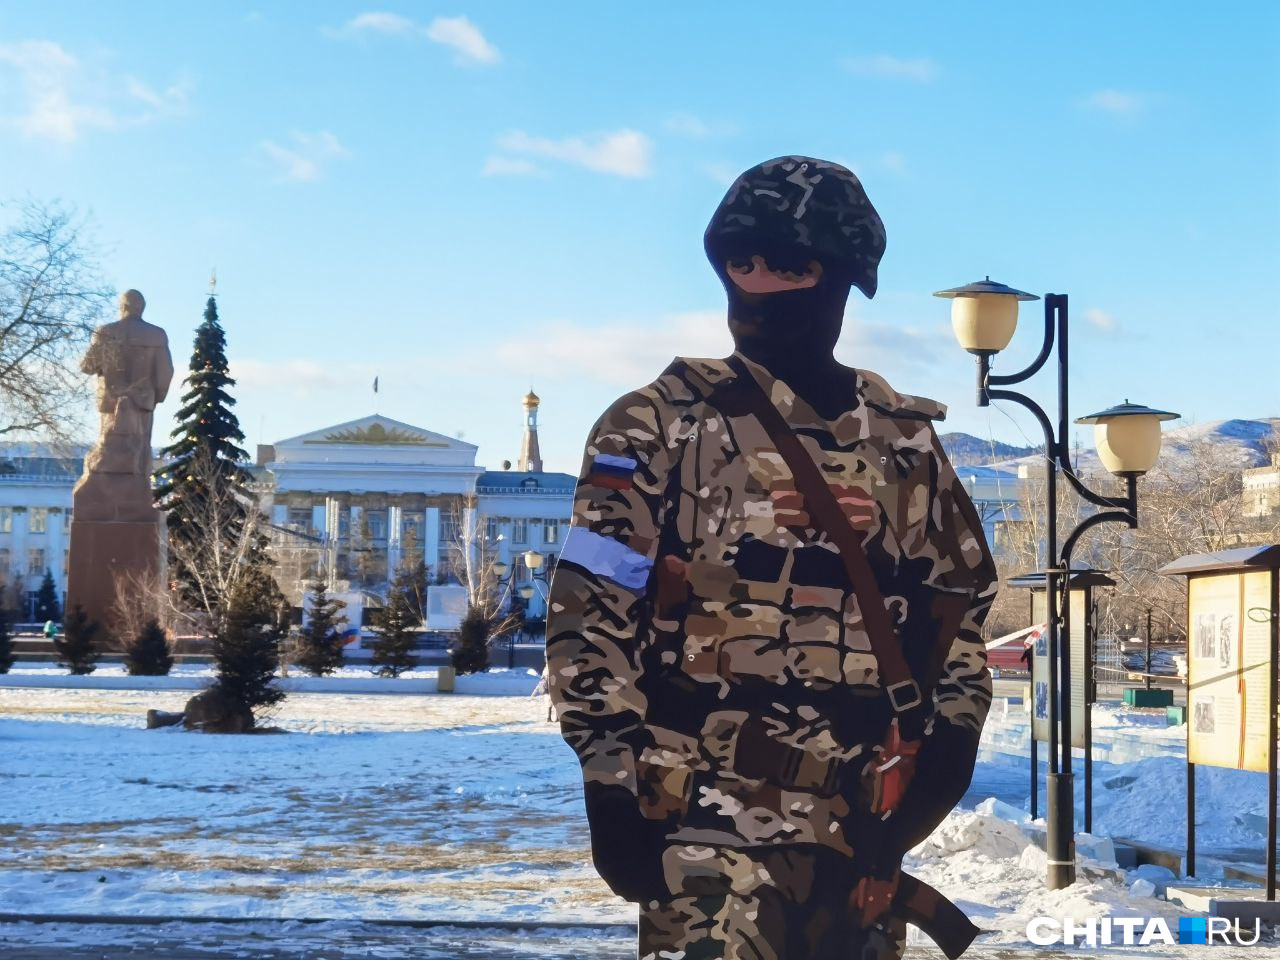 Площадь Ленина в Чите украсили пластмассовыми солдатами к Новому году